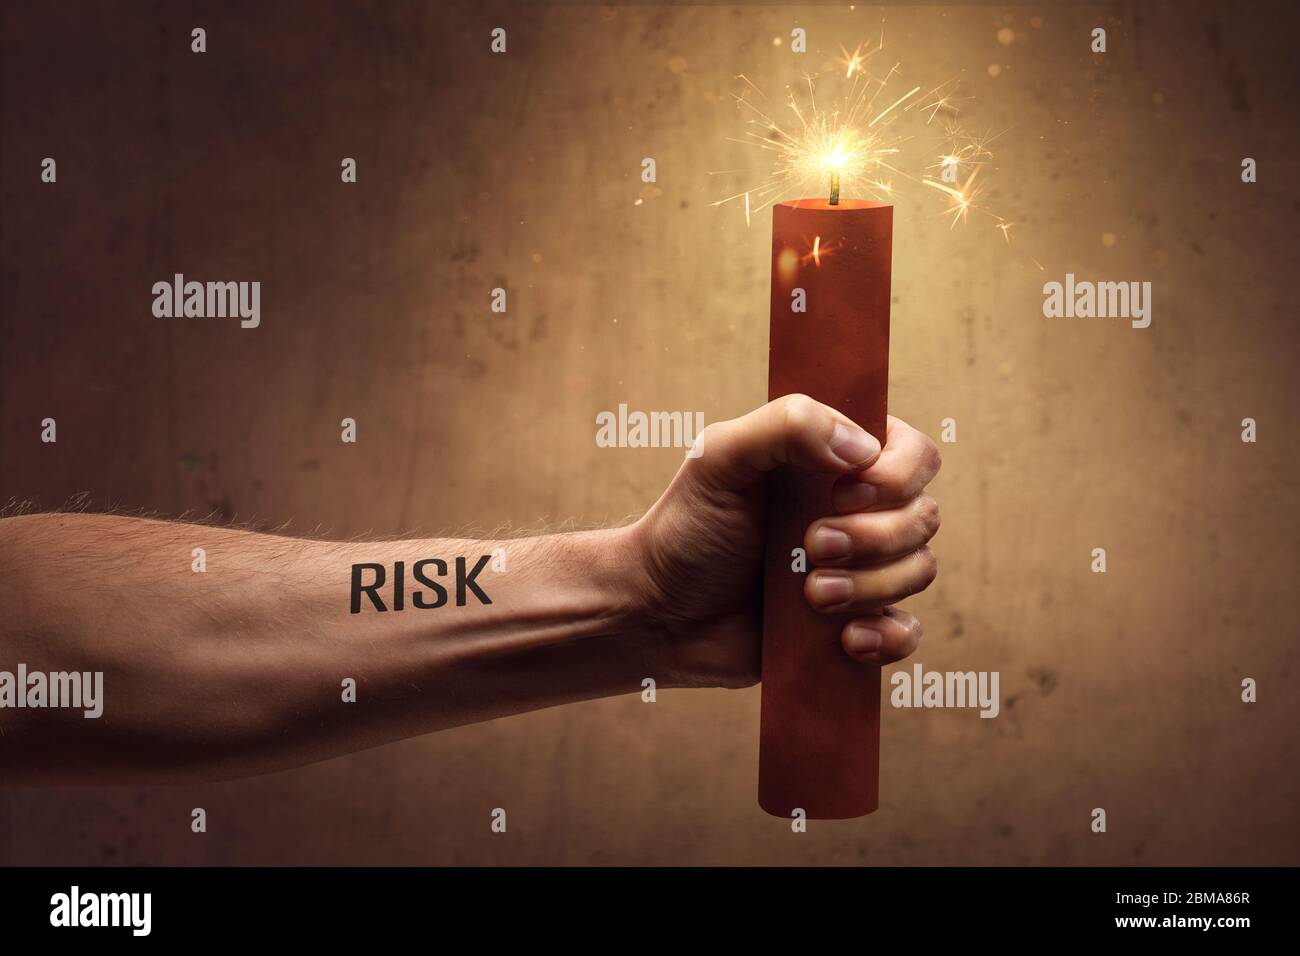 Risikokonzept - Hand hält einen brennenden Stab von Dynamit Stockfoto